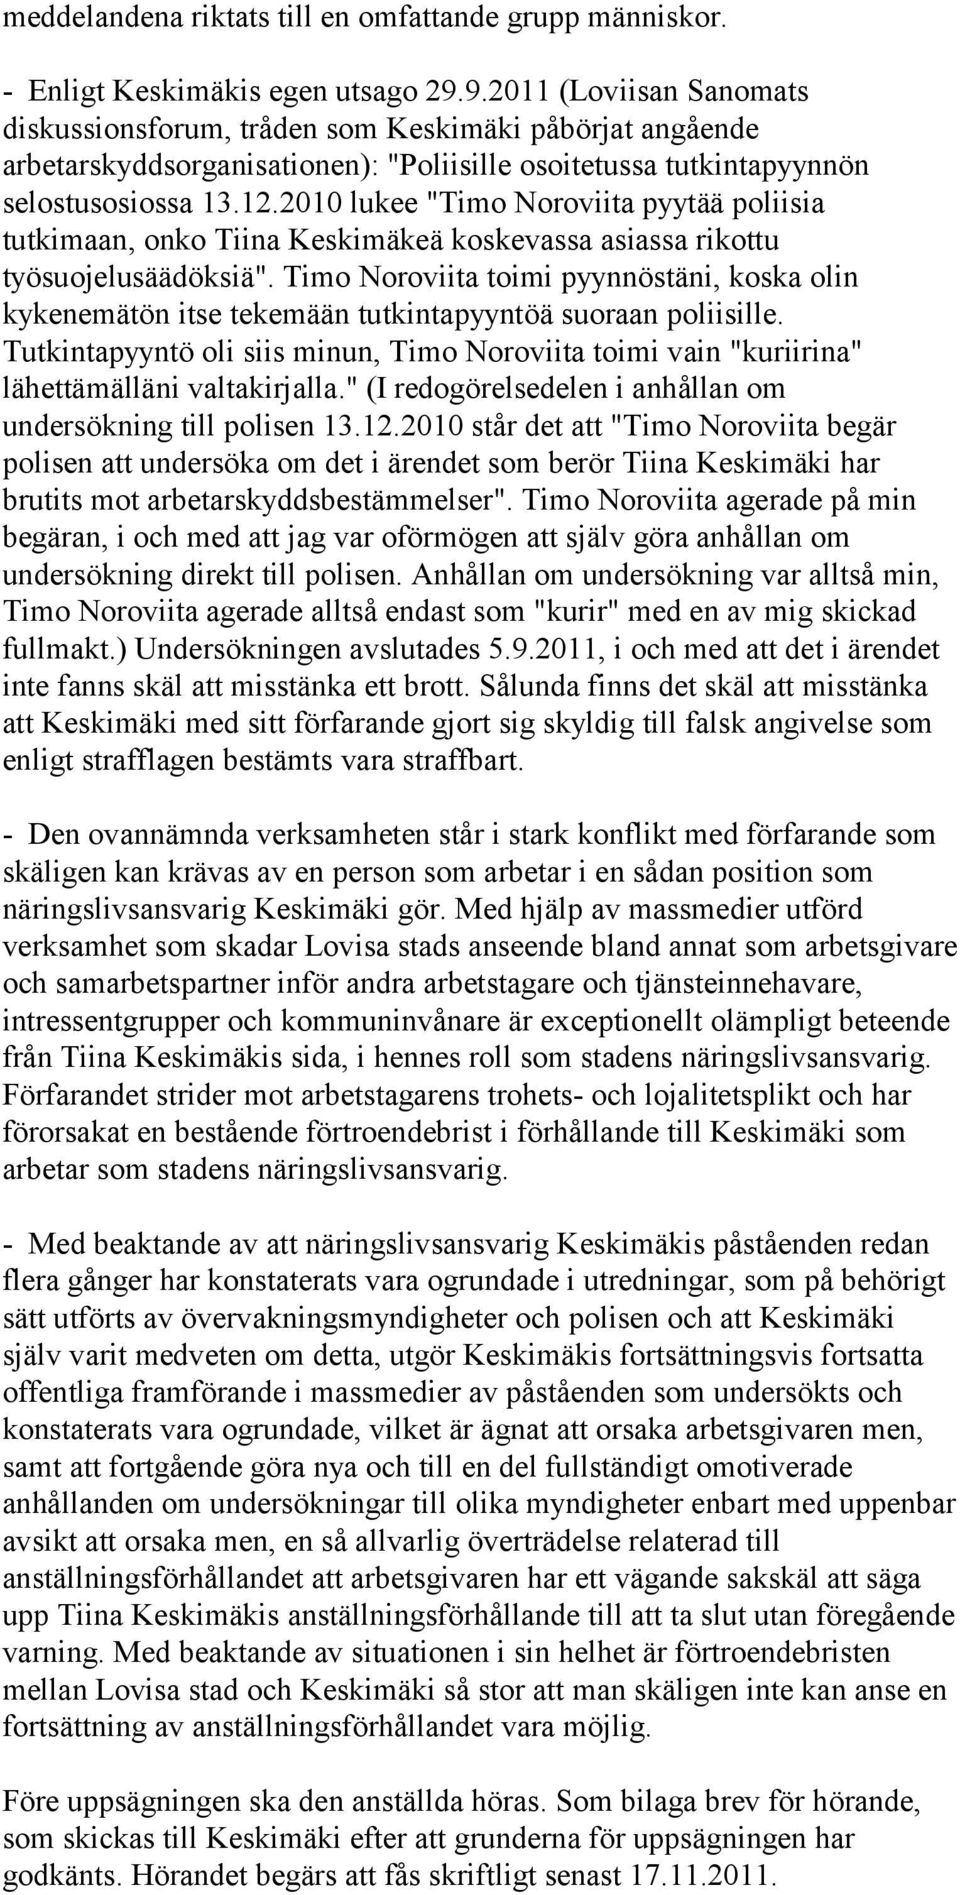 2010 lukee "Timo Noroviita pyytää poliisia tutkimaan, onko Tiina Keskimäkeä koskevassa asiassa rikottu työsuojelusäädöksiä".